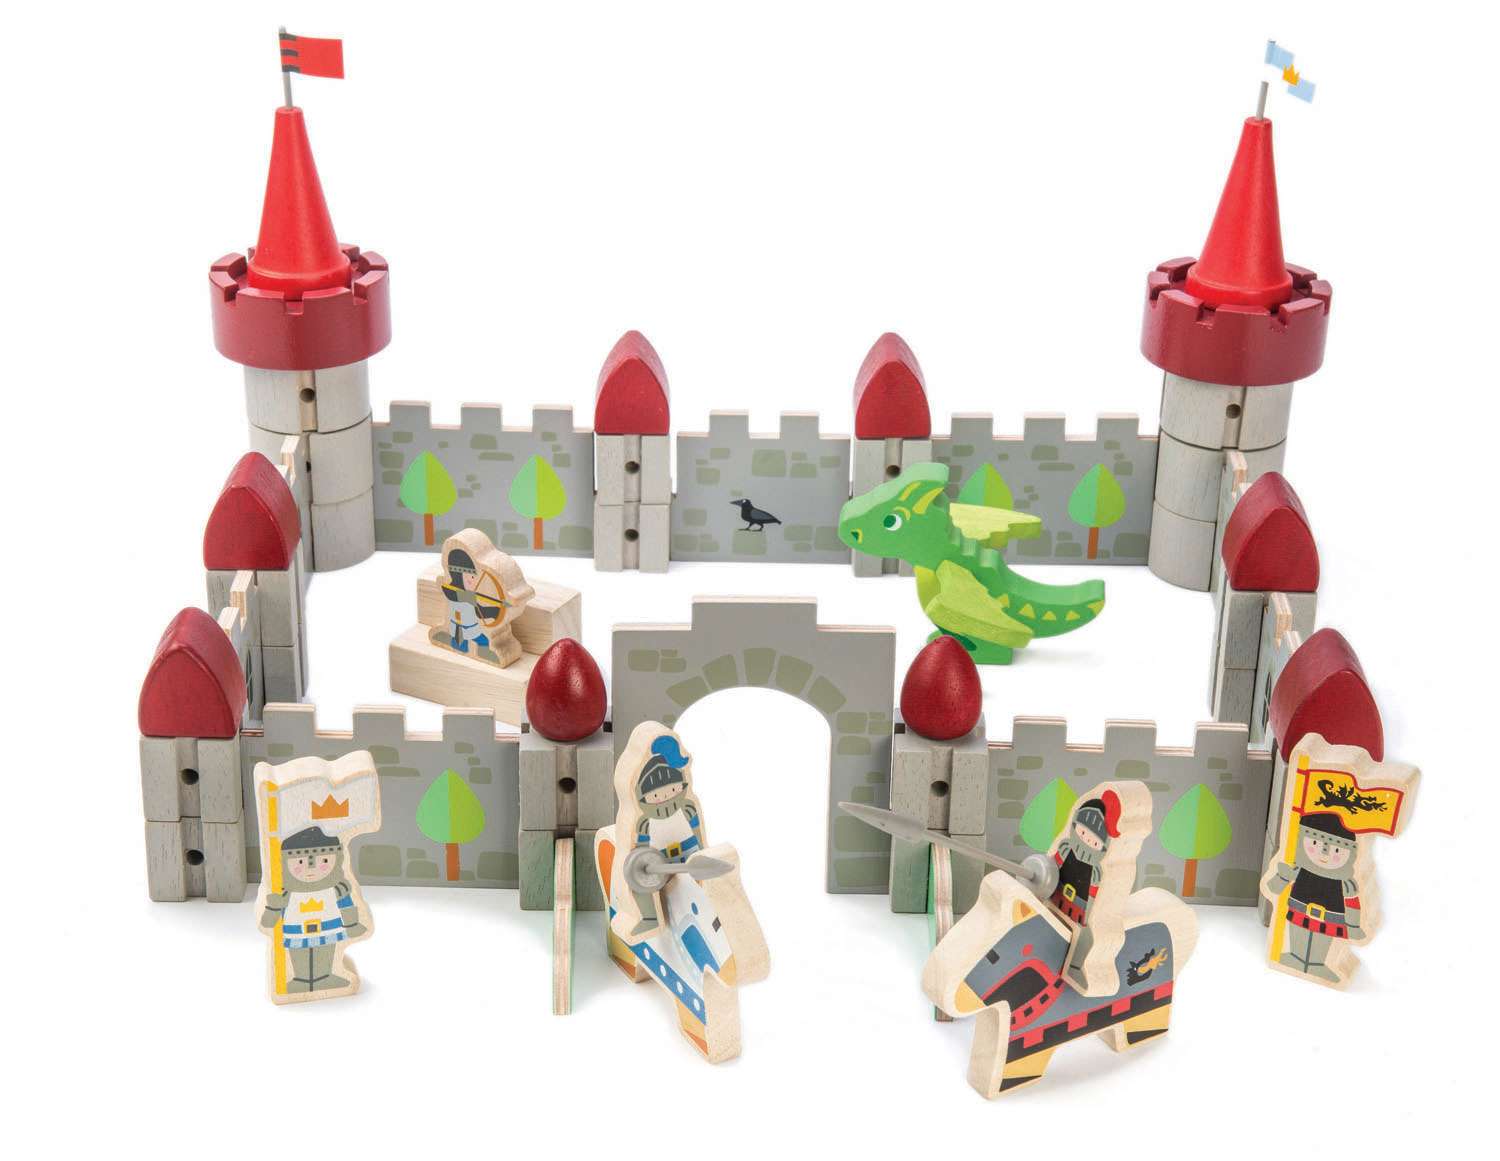 Tender Leaf Toys ของเล่นไม้ ของเล่นเด็ก ปราสาทมังกร Dragon Castle